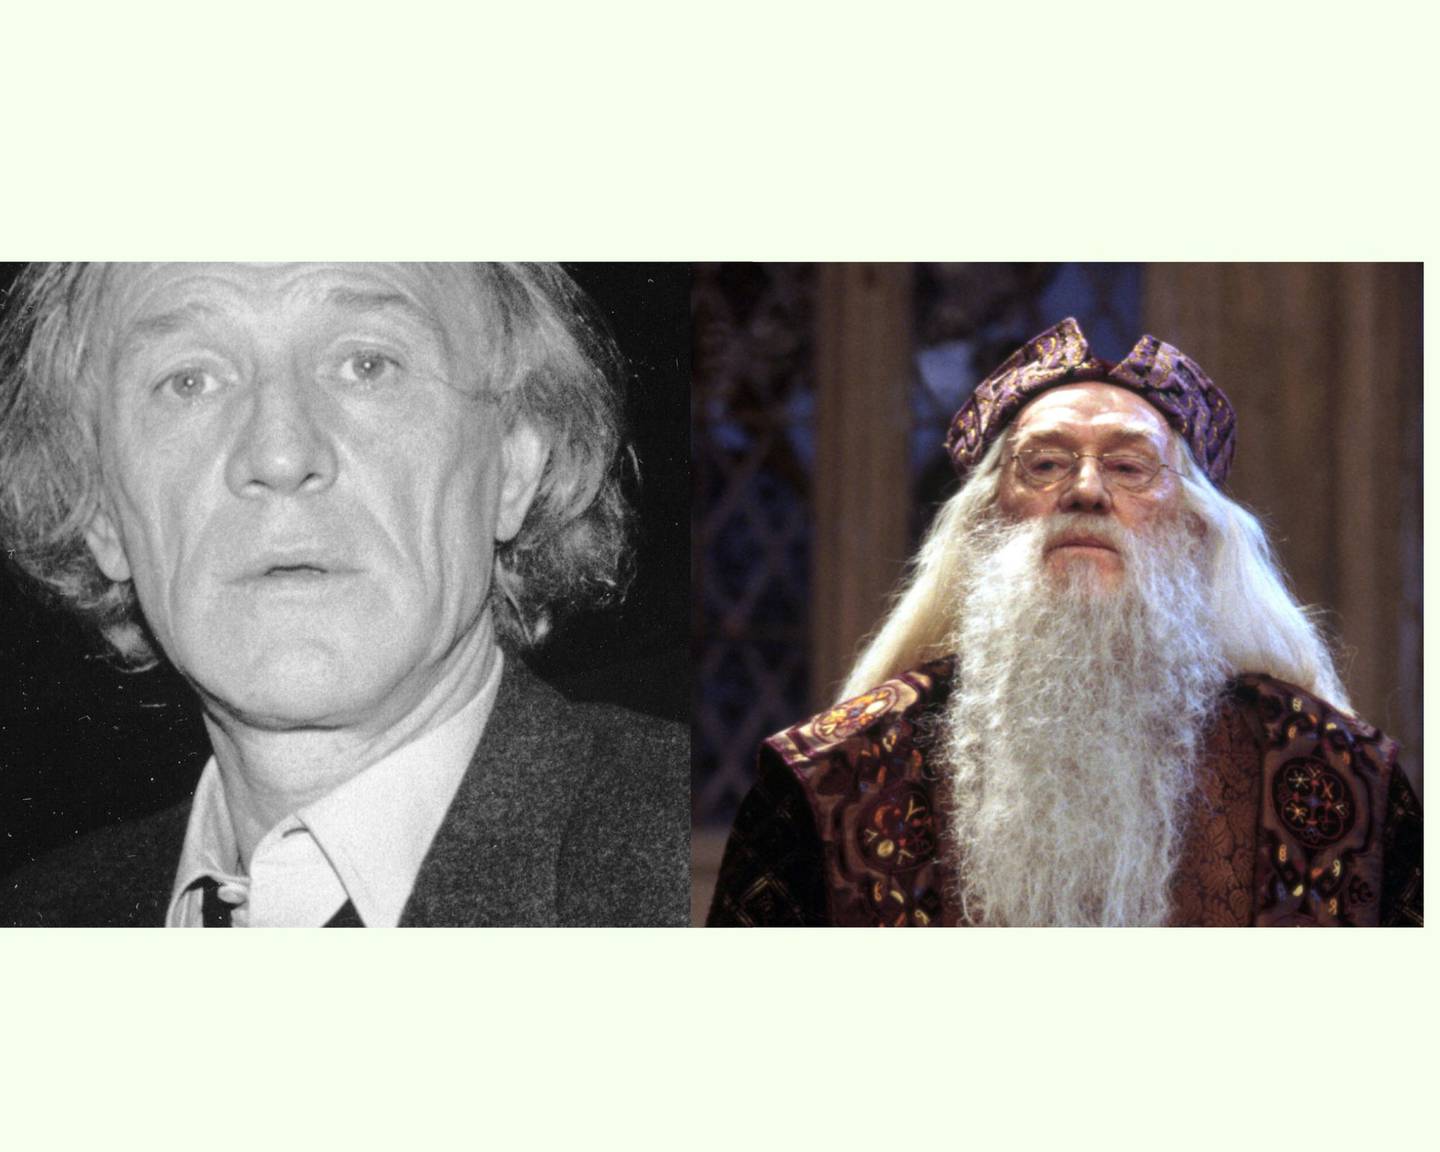 Richard Harris fue el primer Albus Dumbledore en la saga de Harry Potter. Falleció a los 72 años poco después de rodar el segundo filme 'La cámara de los secretos'. Foto: Warner Bros - WikiCommons